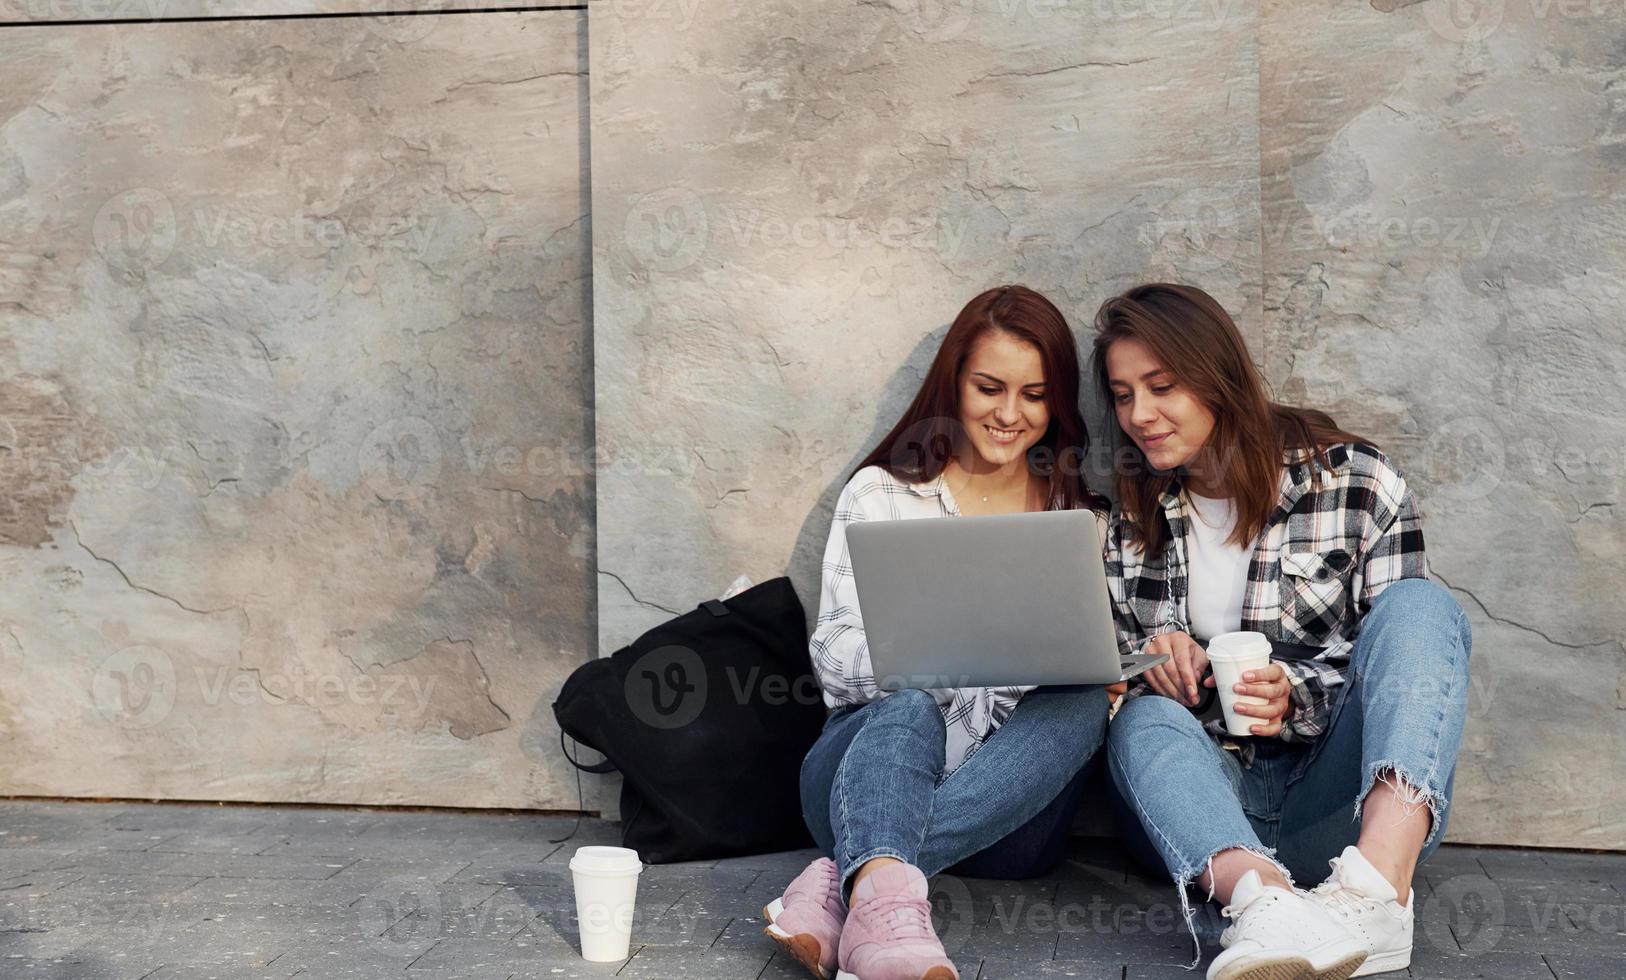 använder sig av bärbar dator. skön glad vänner eller lesbisk par tillsammans nära vägg utomhus på dagtid foto